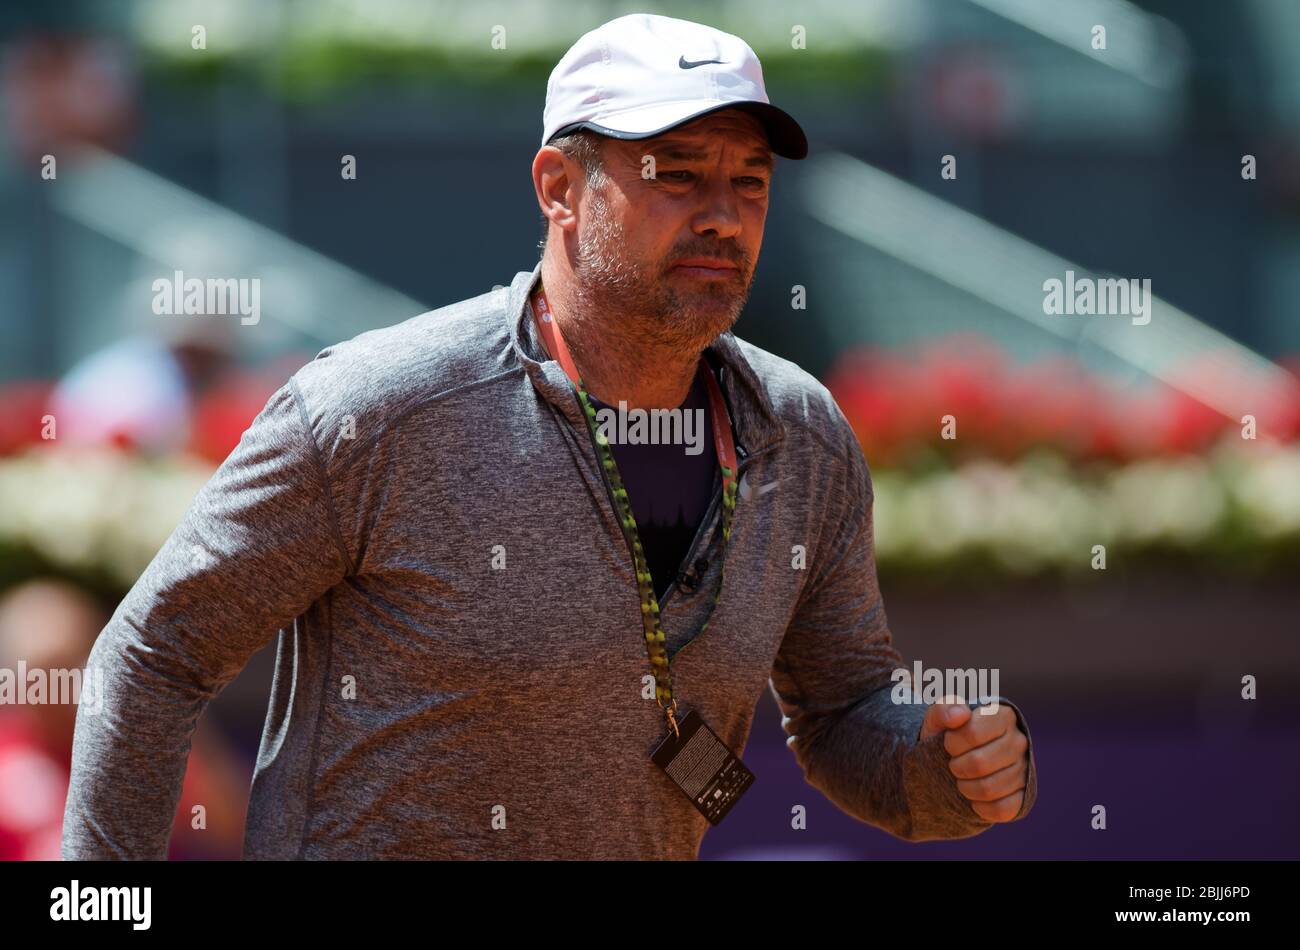 Daniel Dobre al torneo di tennis obbligatorio Mutua Madrid Open WTA Premier 2019 Foto Stock